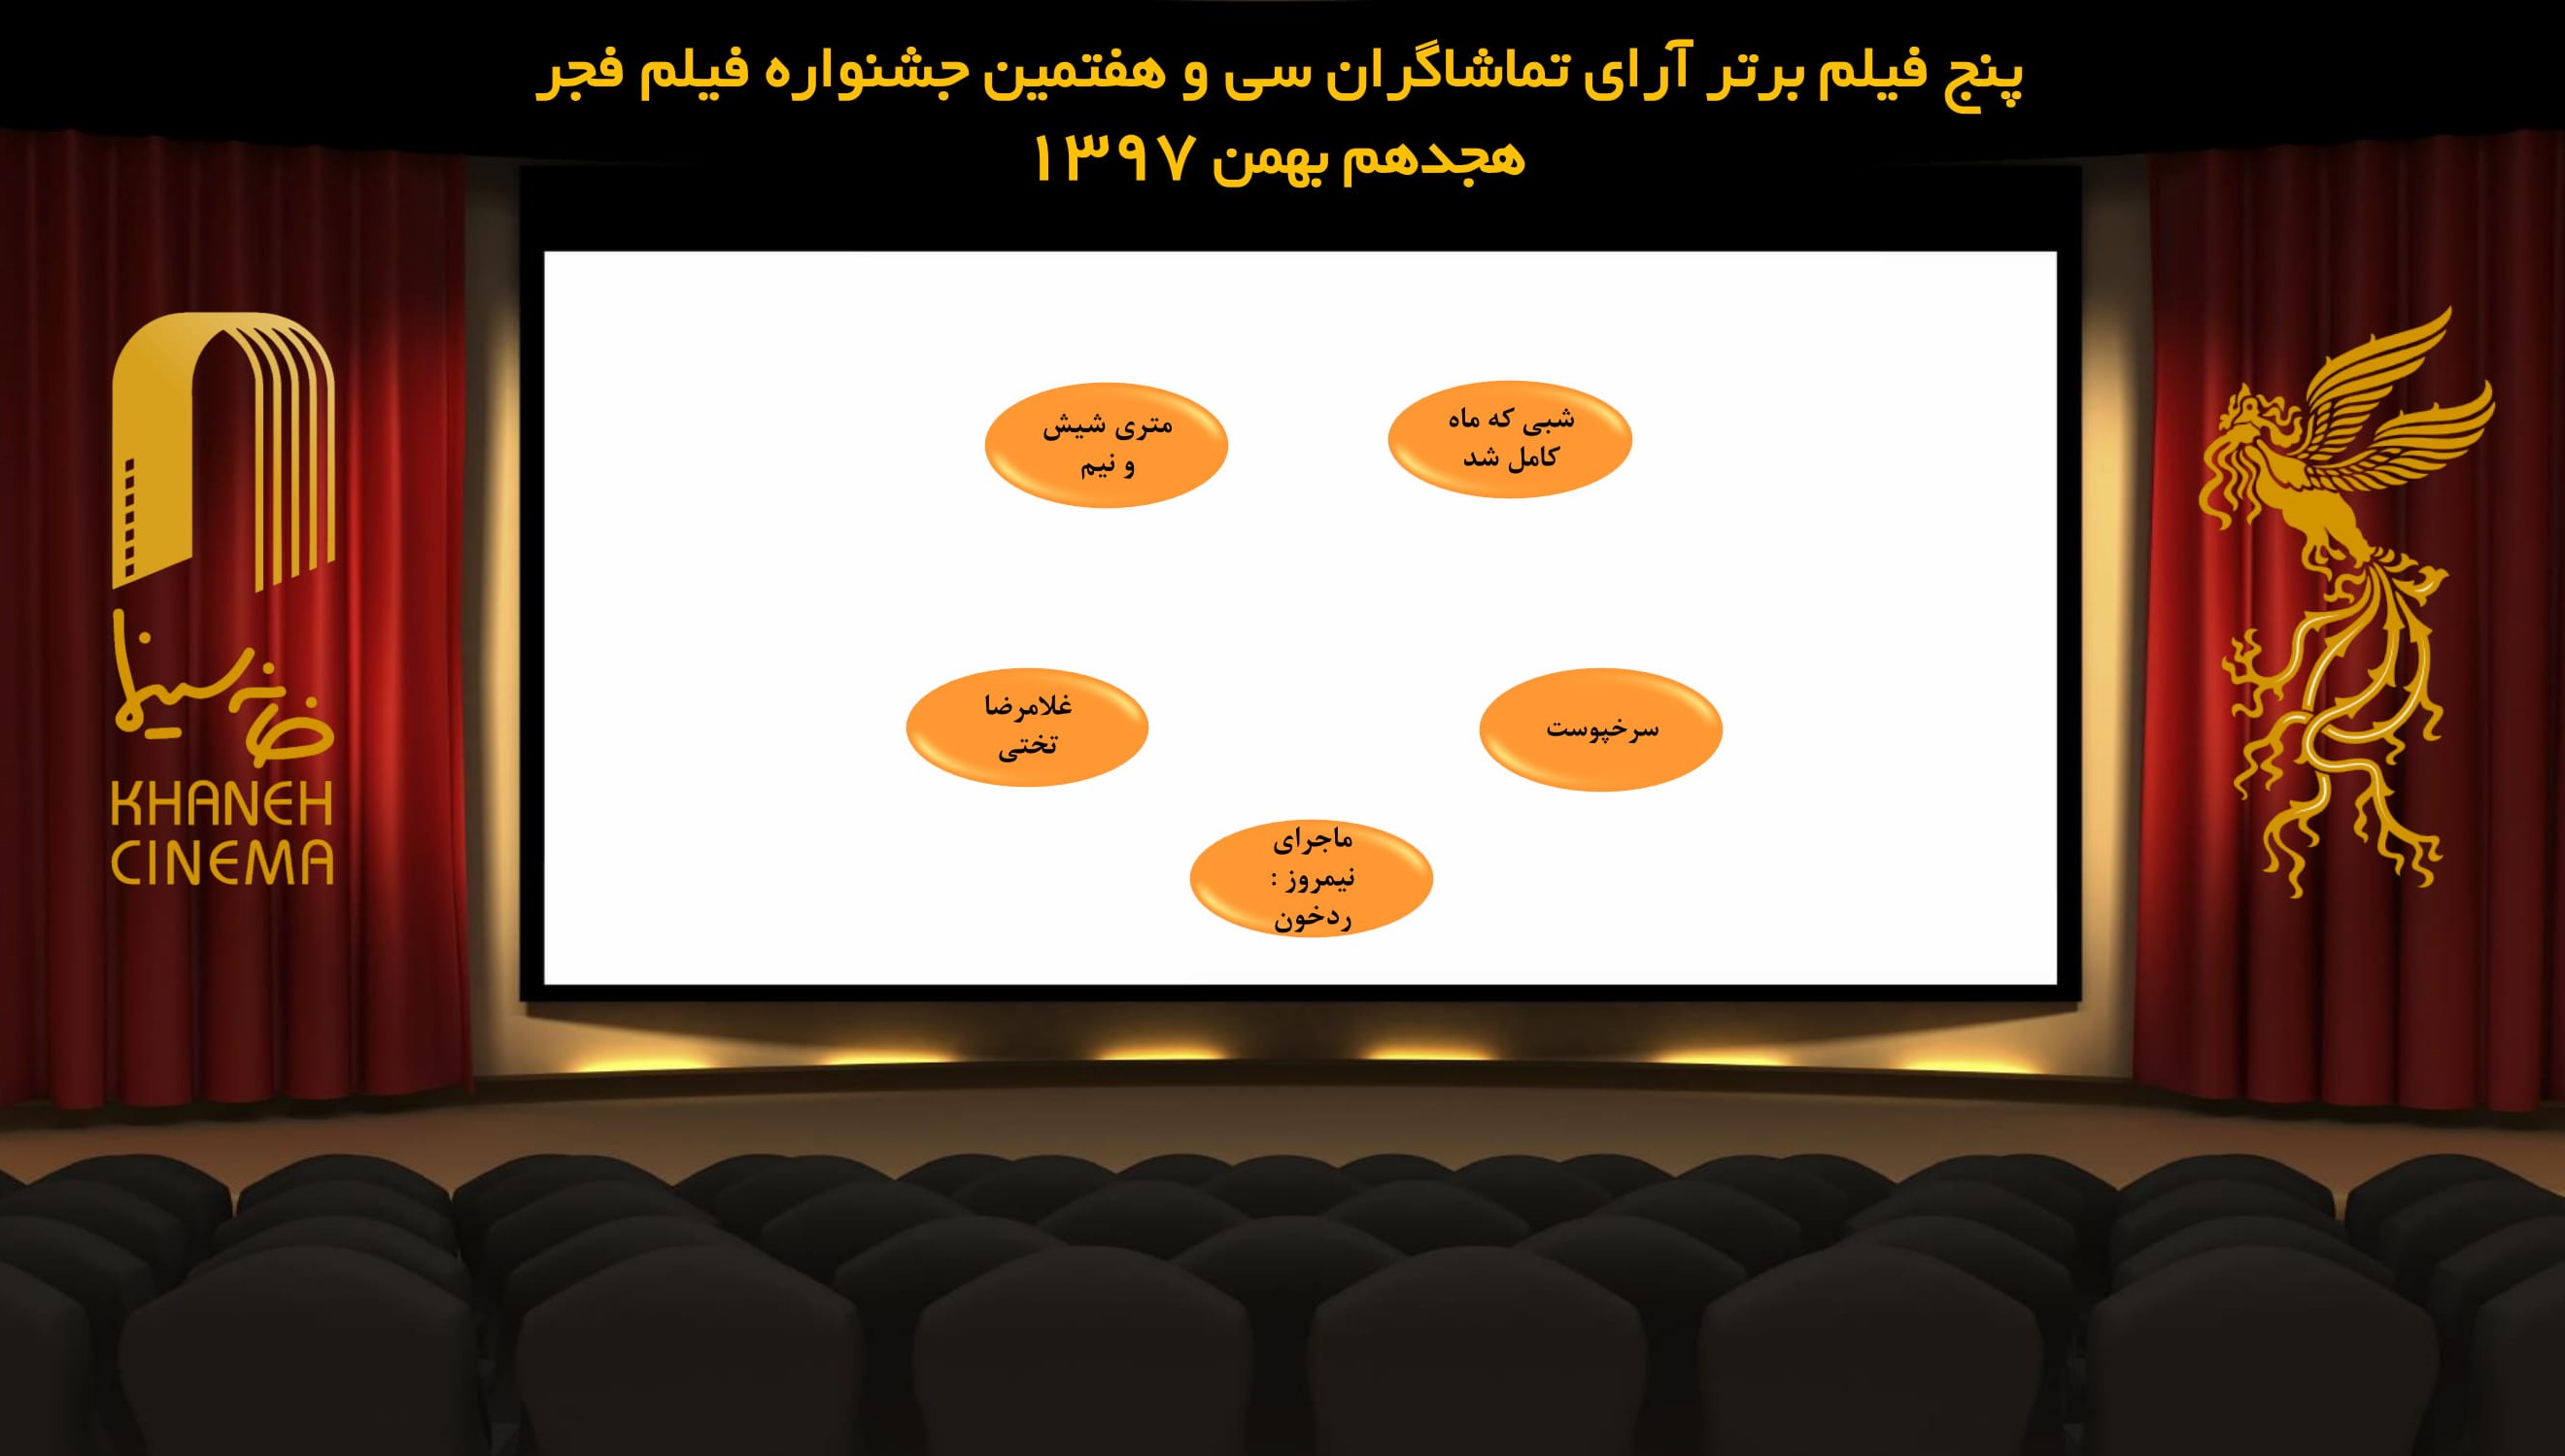 نتیجه شمارش آرای فیلم های نمایش داده شده در روز هشتم جشنواره فیلم فجر (1397/11/17) توسط ستاد انتخاب فیلم برگزیده از نگاه تماشاگران جشنواره فیلم فجر اعلام شد. لازم به توضیح است فهرست فیلم ها بدون اولویت است.